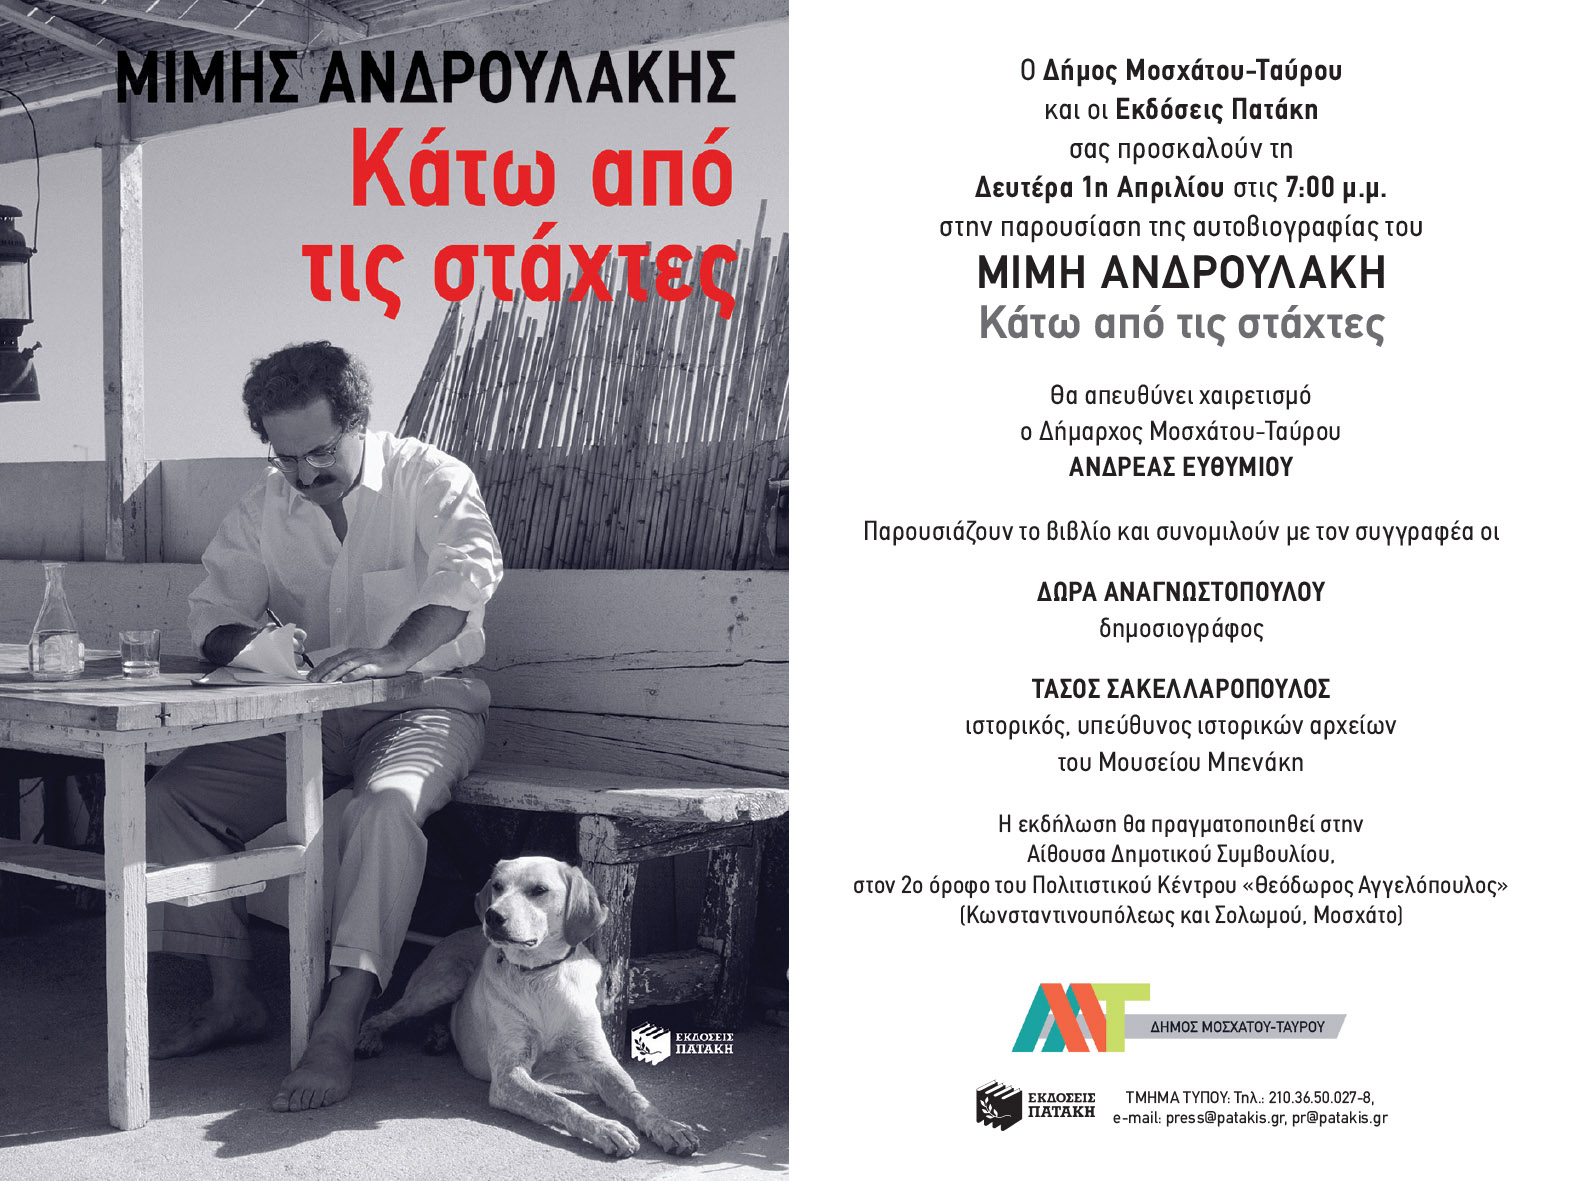 Παρουσίαση της αυτοβιογραφίας του Μίμη Ανδρουλάκη «Κάτω από τις Στάχτες» στο Πολιτιστικό Κέντρο «Θεόδωρος Αγγελόπουλος» στο Μοσχάτο